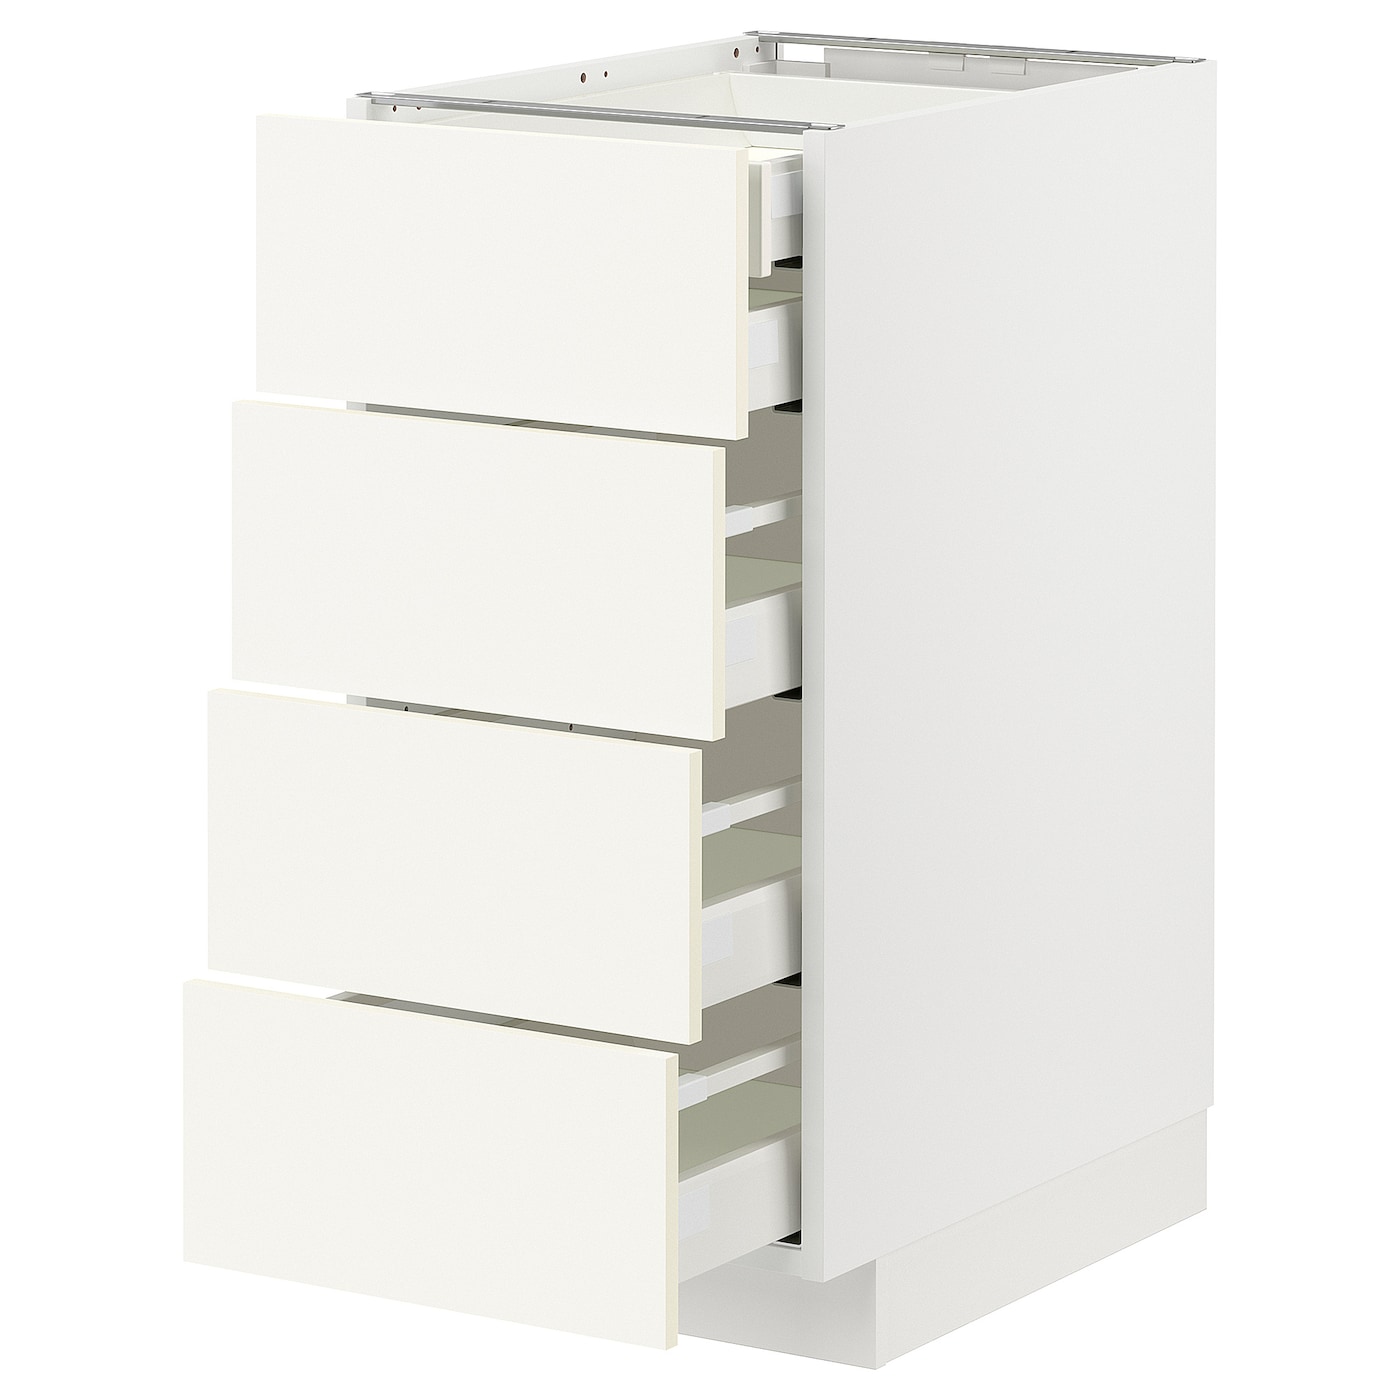 Напольный шкаф  - IKEA METOD MAXIMERA, 88x61,6x40см, белый, МЕТОД МАКСИМЕРА ИКЕА